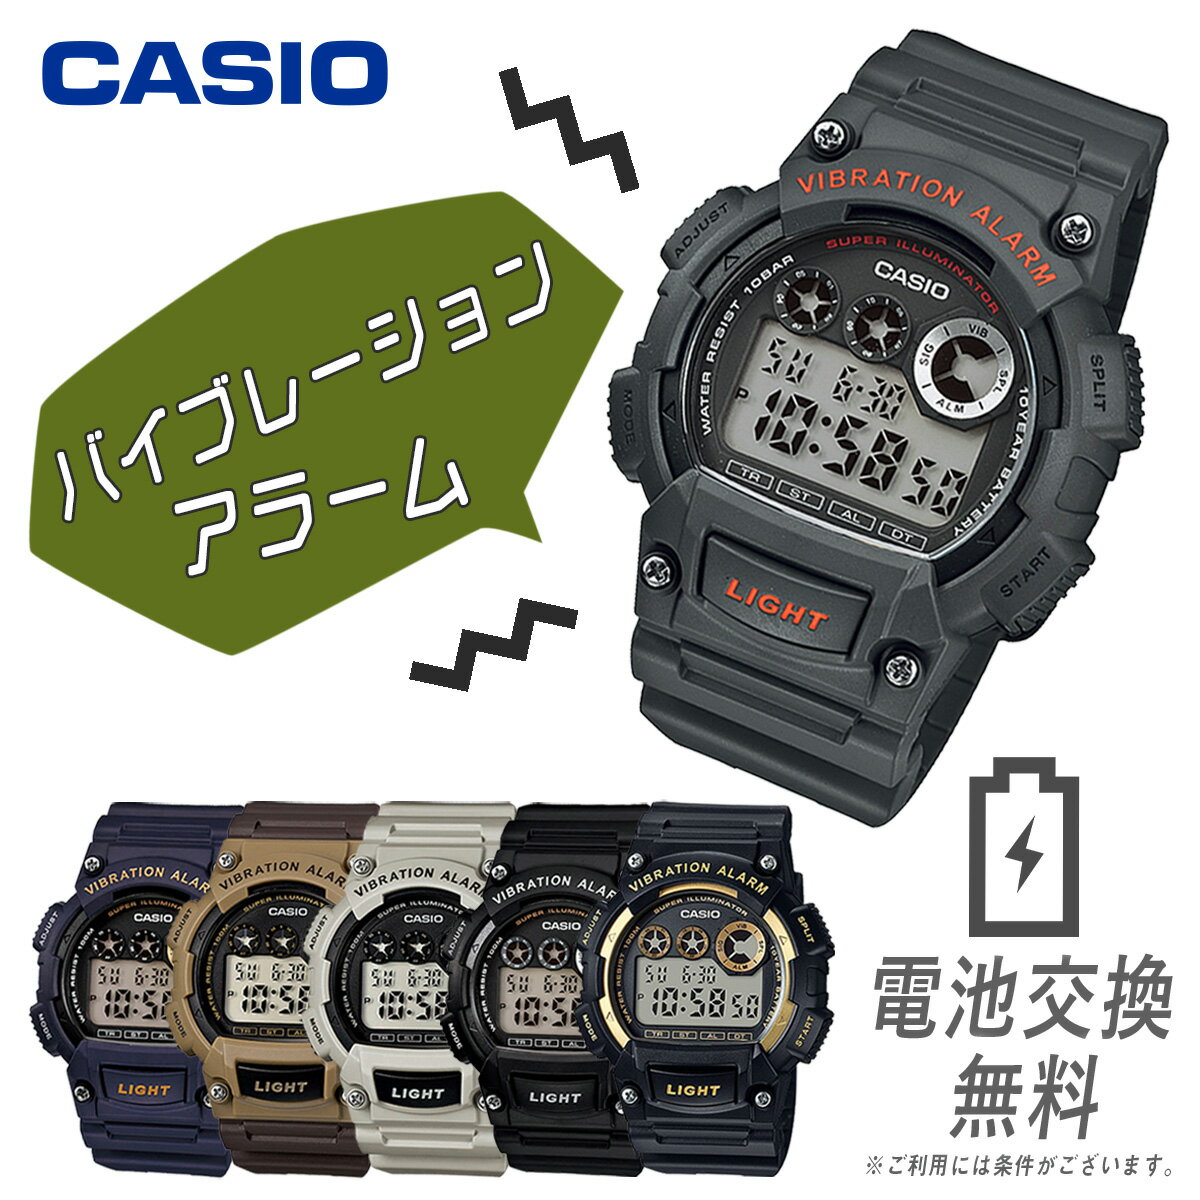 中学生に薦める メンズ腕時計 大人気 かっこいい時計のおすすめプレゼントランキング 予算5 000円以内 Ocruyo オクルヨ